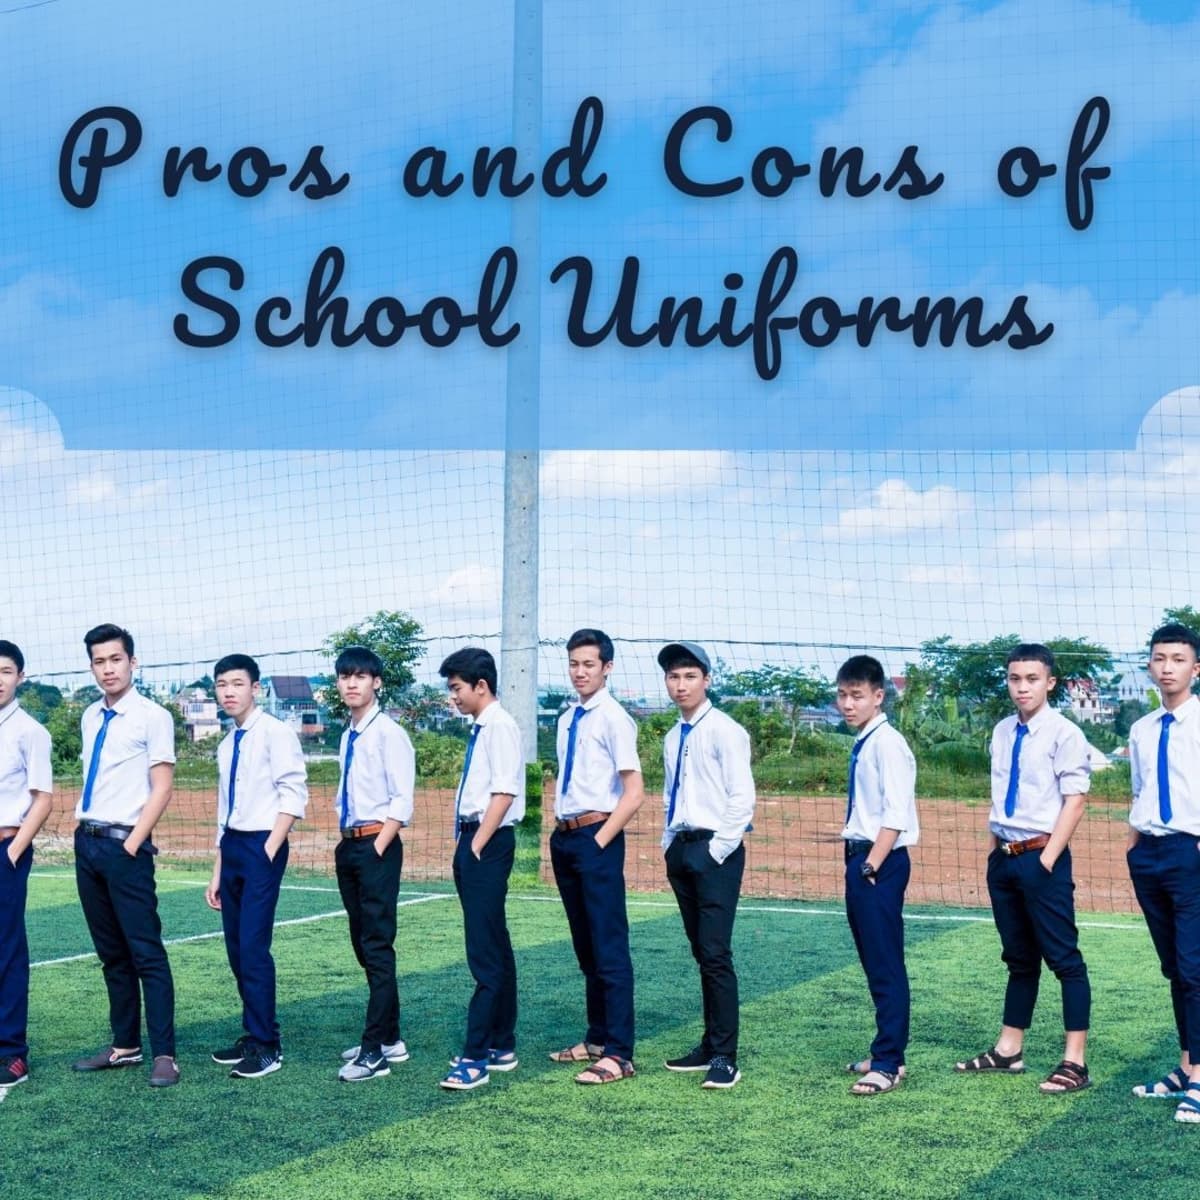 persuasive speech against school uniforms